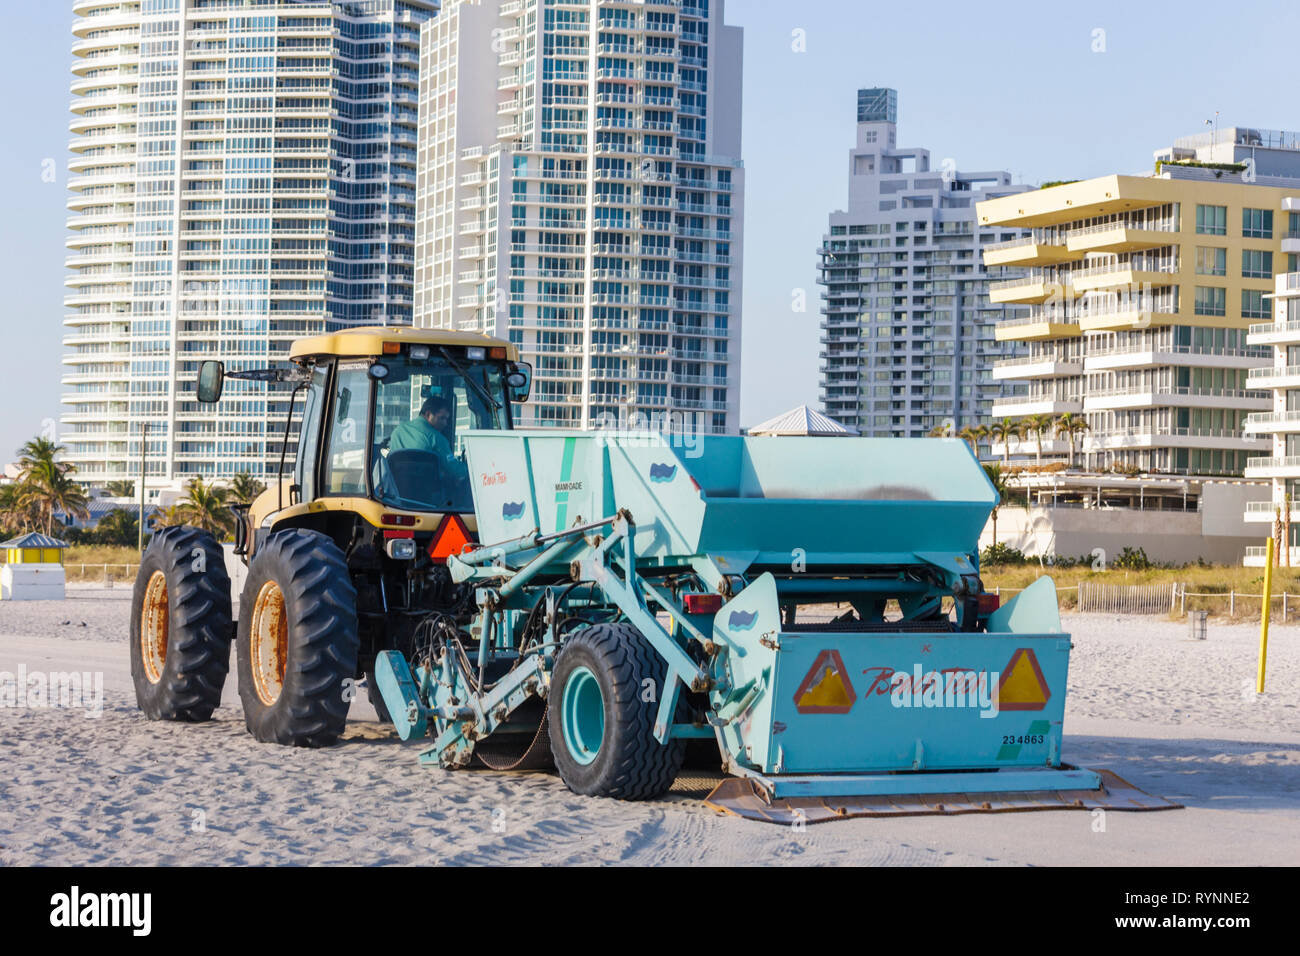 Miami Beach Florida, Atlantik, Wasser, öffentlicher Strand, Reinigung, Reinigung, Traktor, Ziehen, Maschine, Sieben, Sand, Abfall, Stadt, Angestellte Arbeiter, die arbeiten Stockfoto